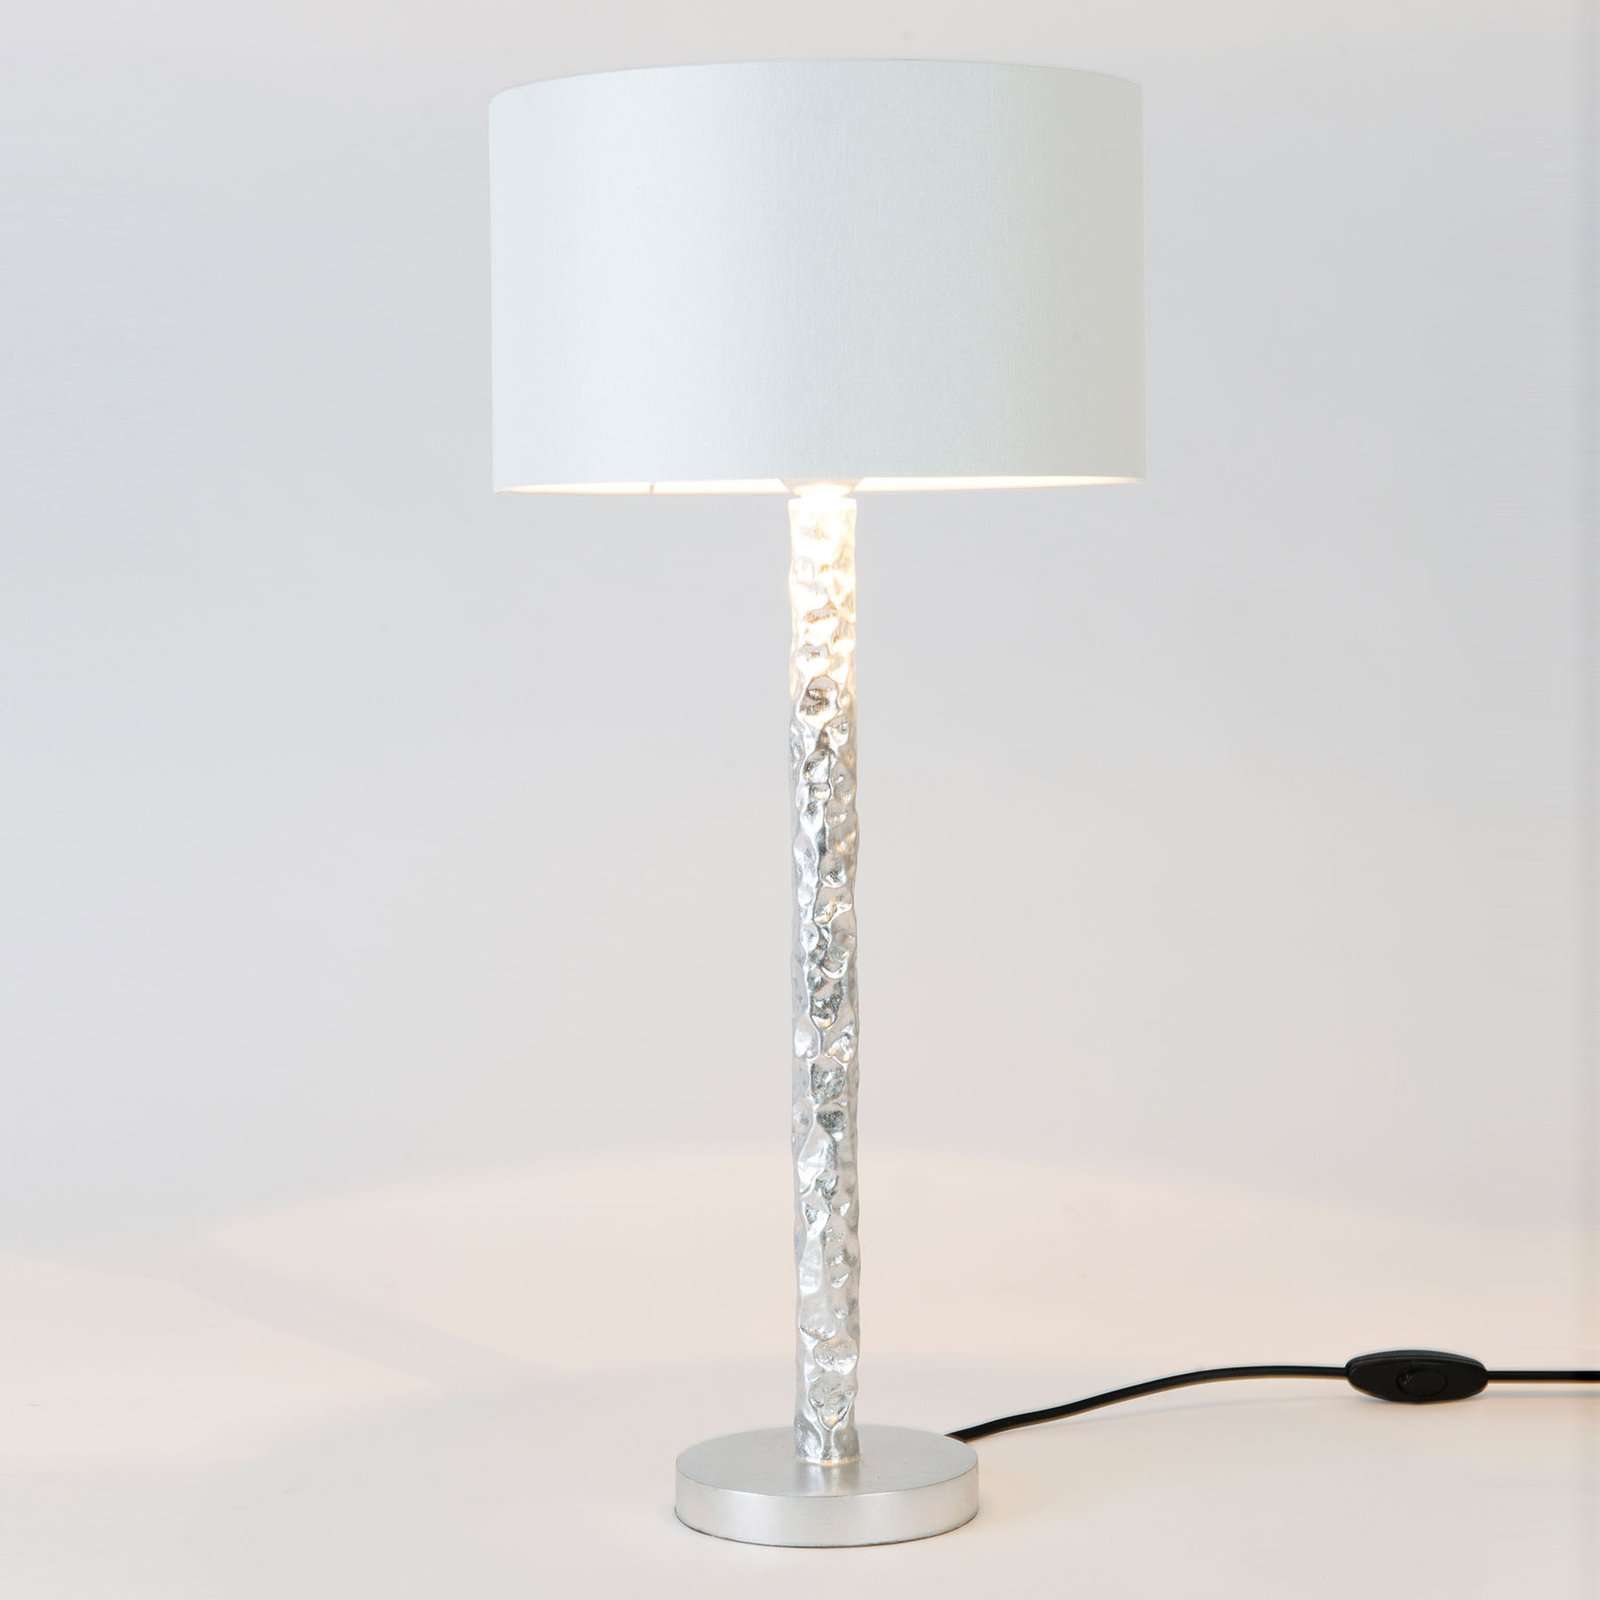 Cancelliere Rotonda table lamp white/silver 57 cm